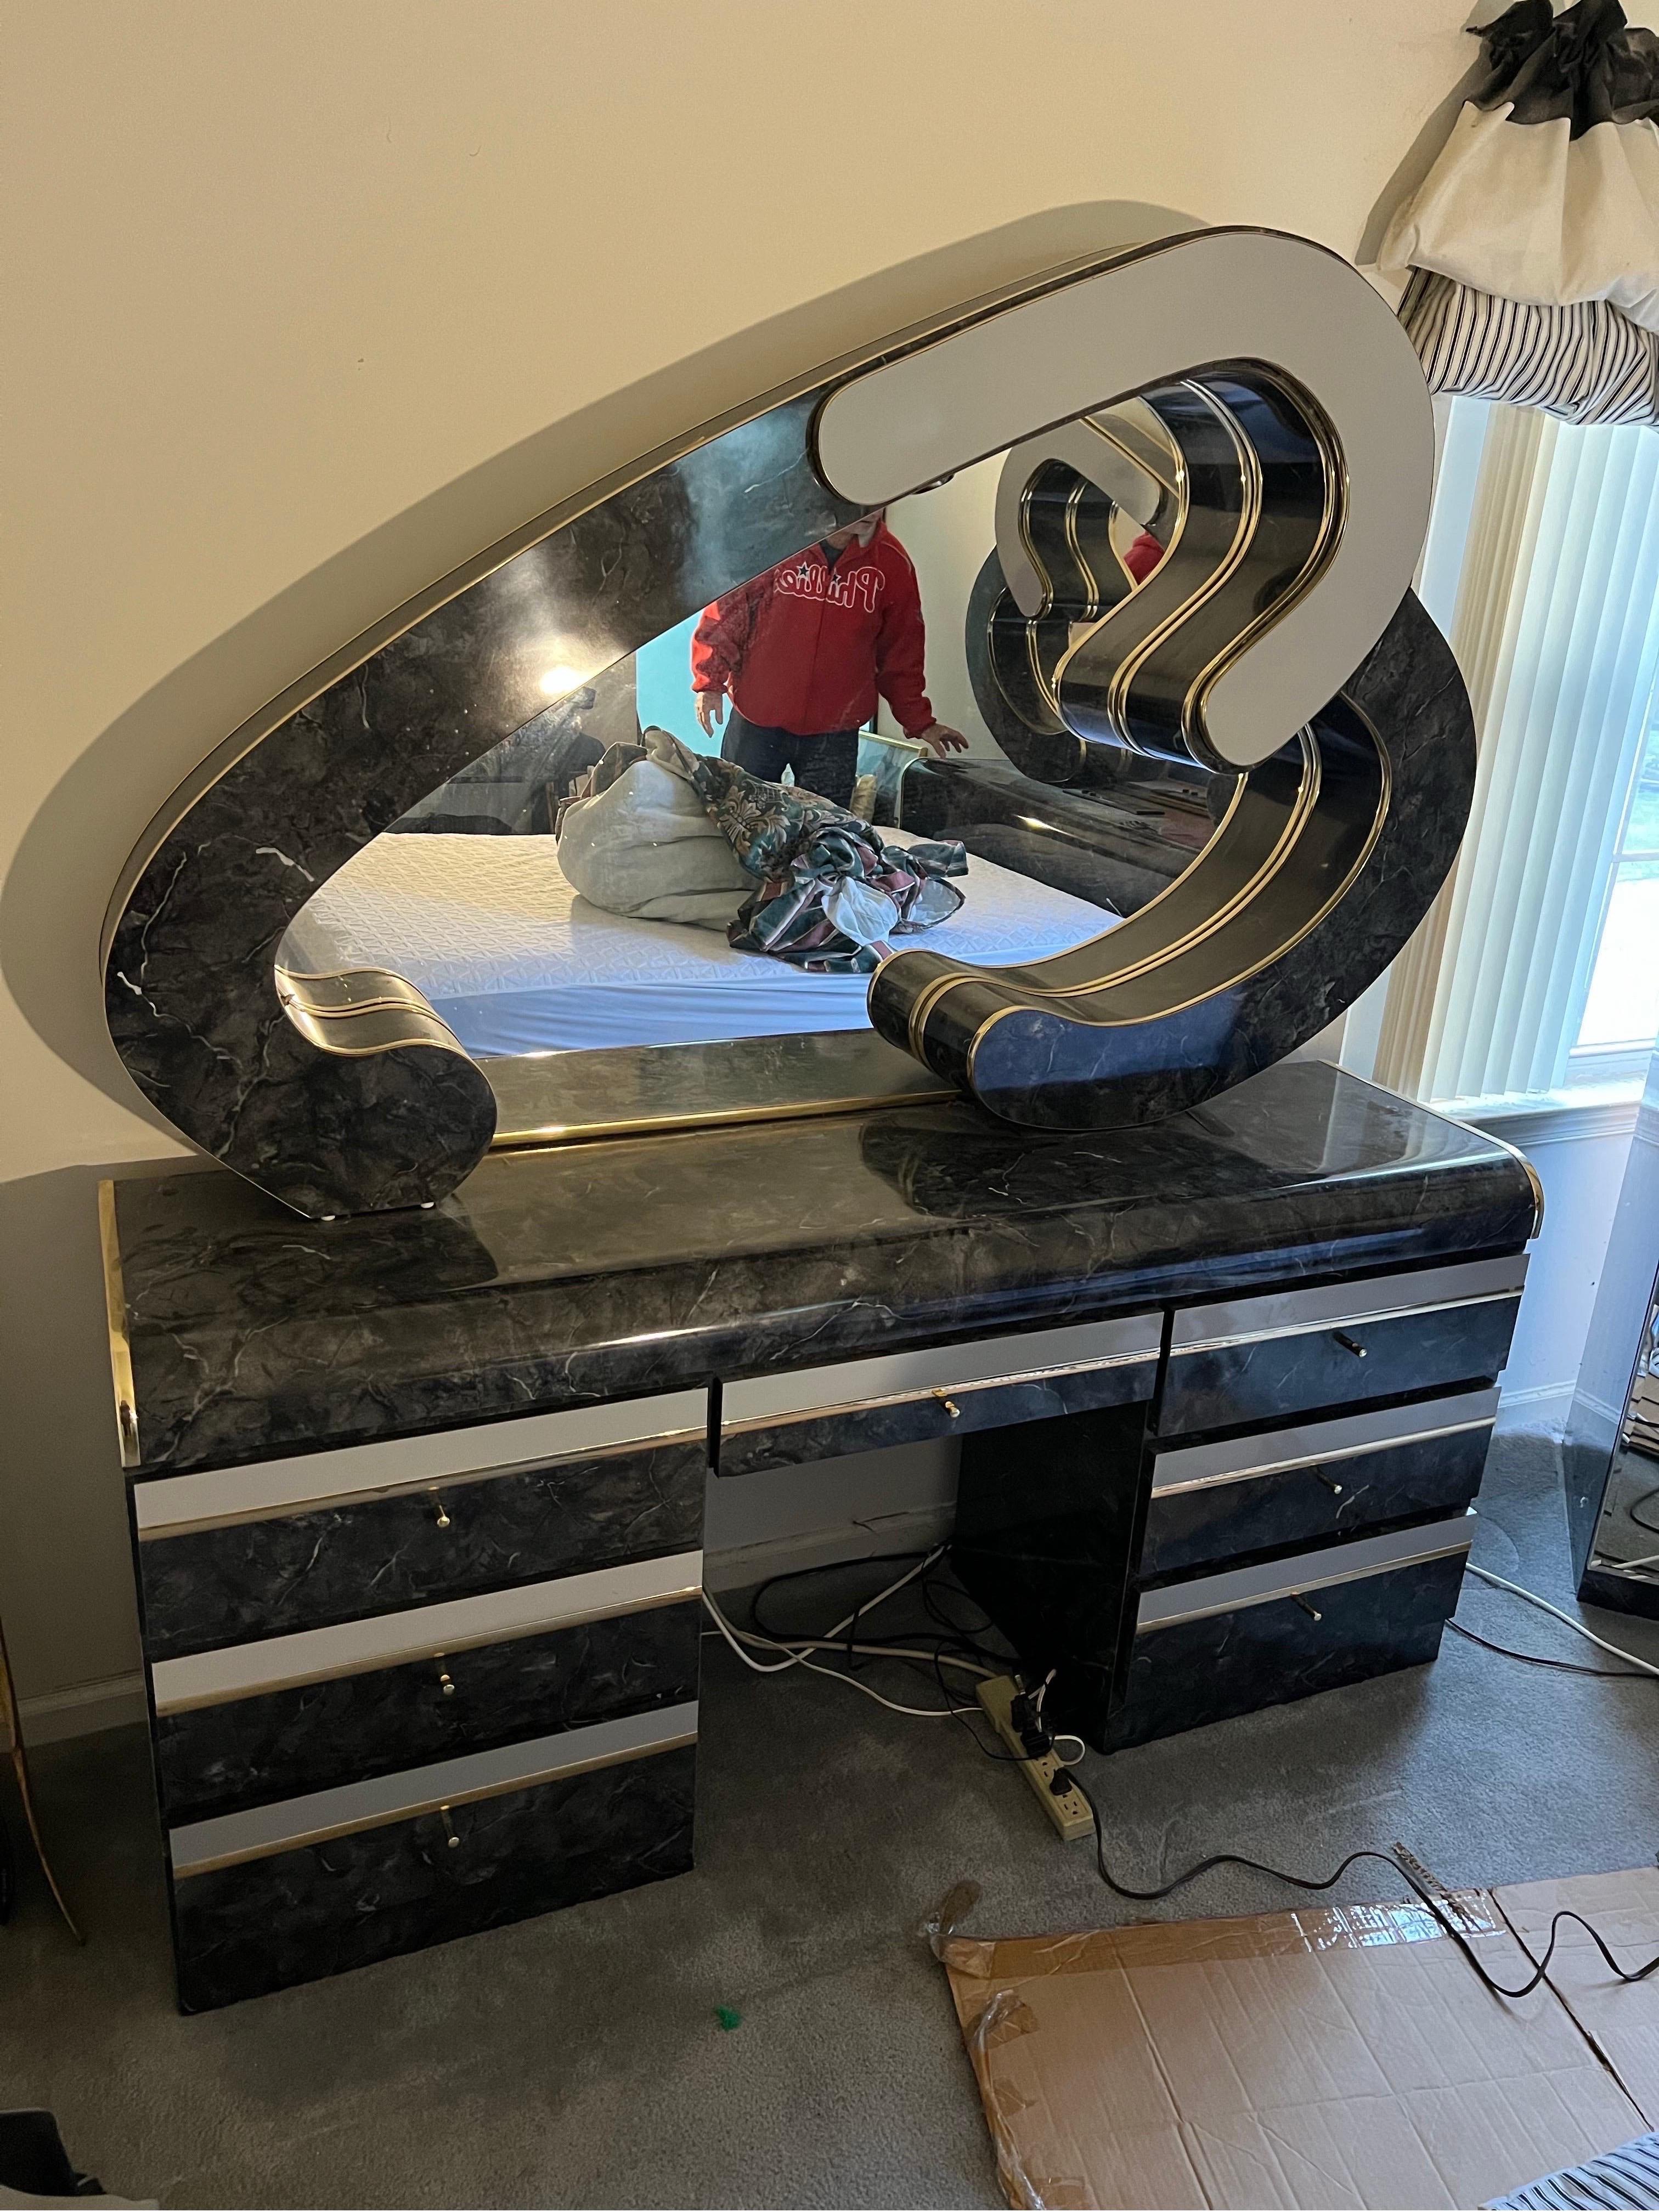 1980 Faux Marble Heart Black Laminate Mirror Vanity Dresser Desk.

Light in the Mirror funktioniert perfekt

Abmessungen des Waschtischs
Breite: 67,5
Höhe: 31
Tiefe: 18,5

Spiegel in Herzform
Breite: 67
Tiefe: 8
Höhe: 41,5